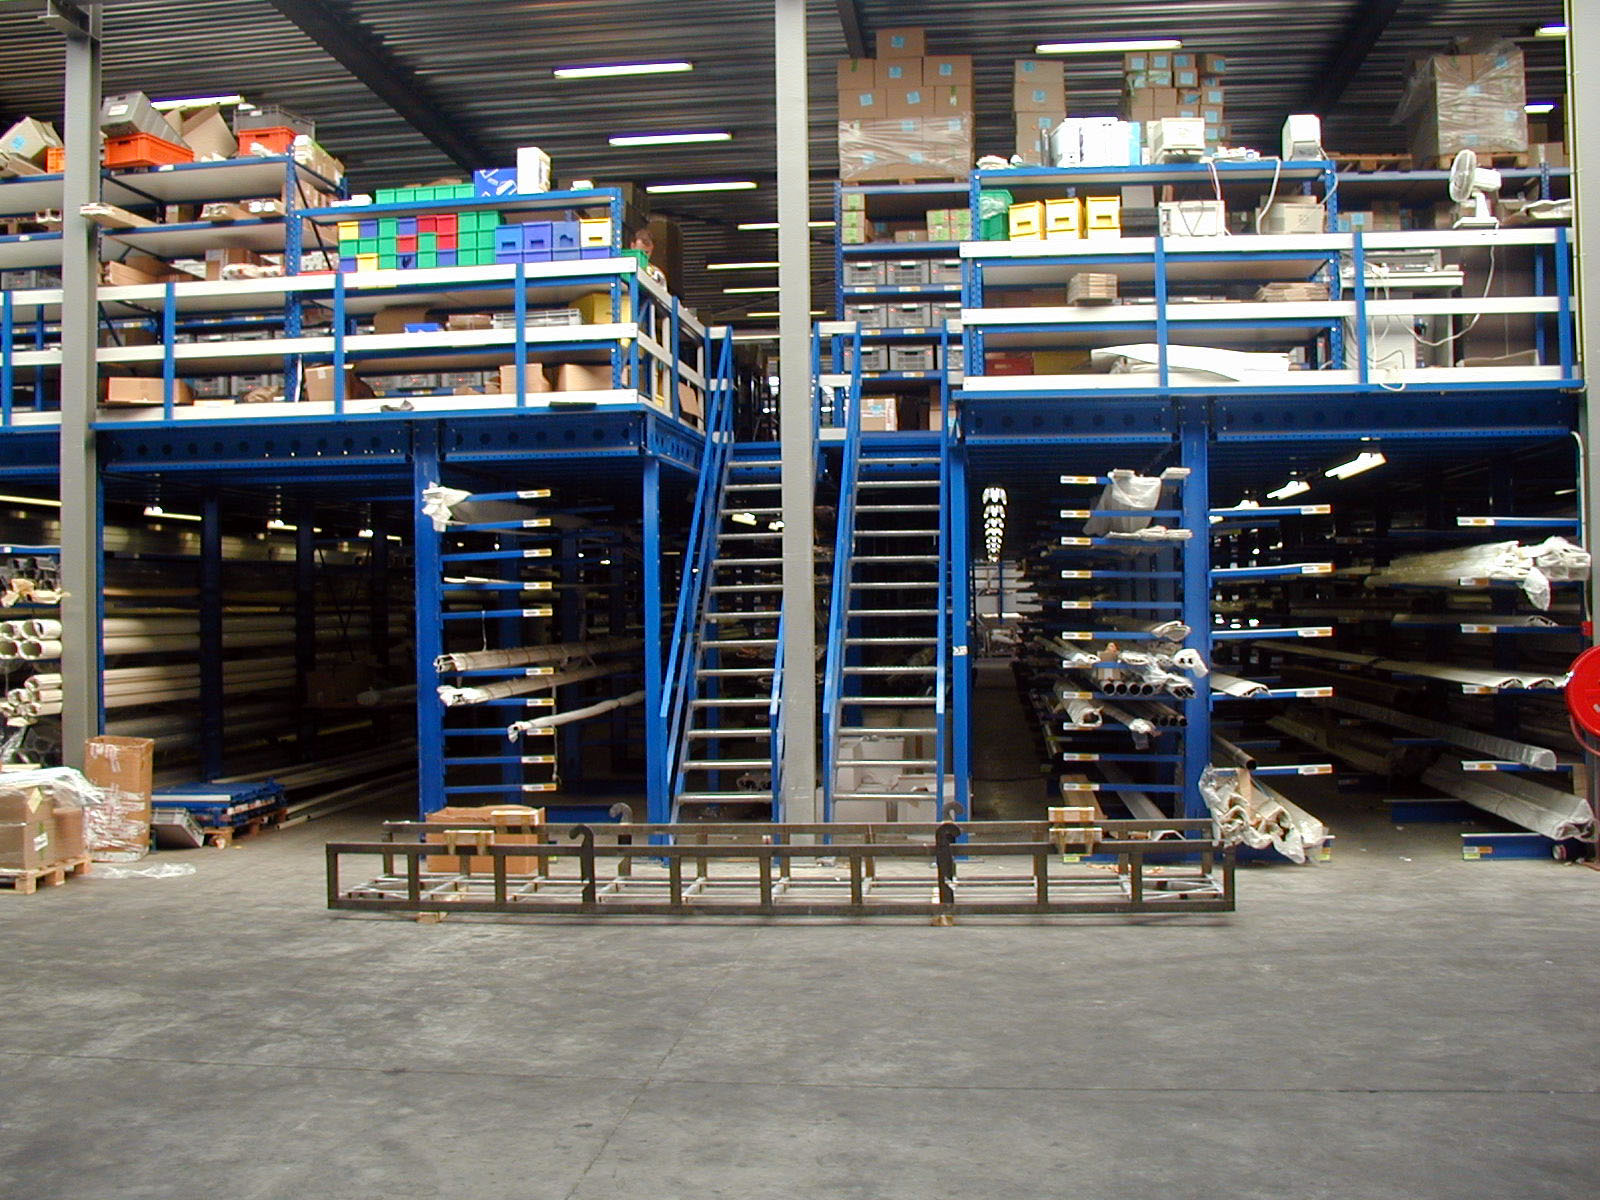 [Translate "Niederlande"] Cantilever racking Multi-tier storage